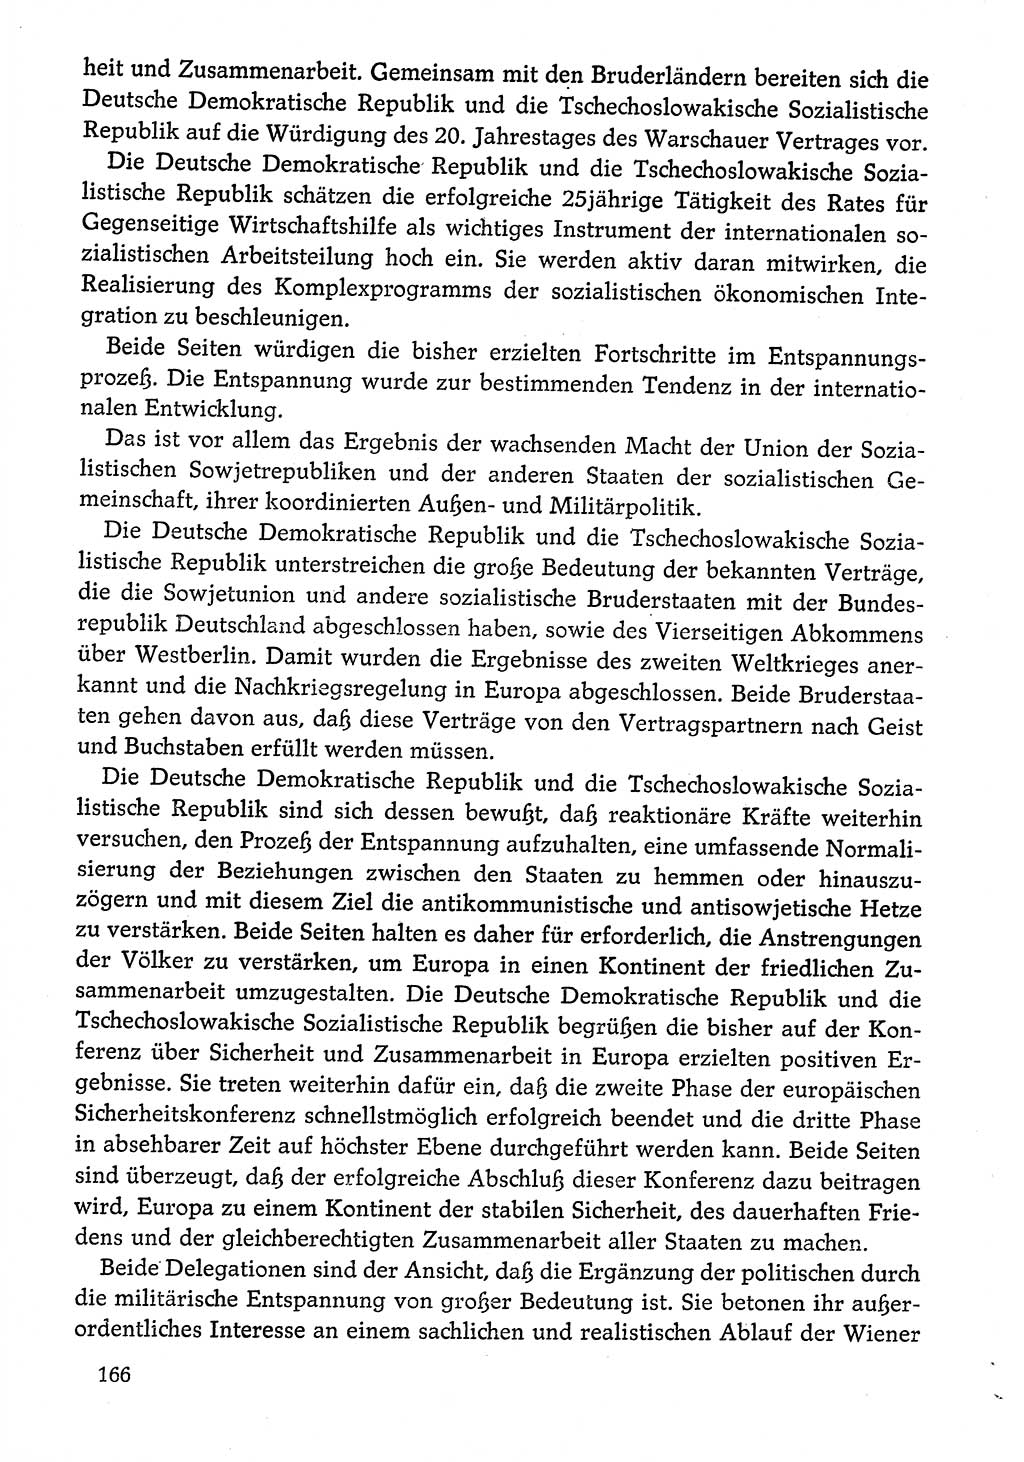 Dokumente der Sozialistischen Einheitspartei Deutschlands (SED) [Deutsche Demokratische Republik (DDR)] 1974-1975, Seite 166 (Dok. SED DDR 1978, Bd. ⅩⅤ, S. 166)